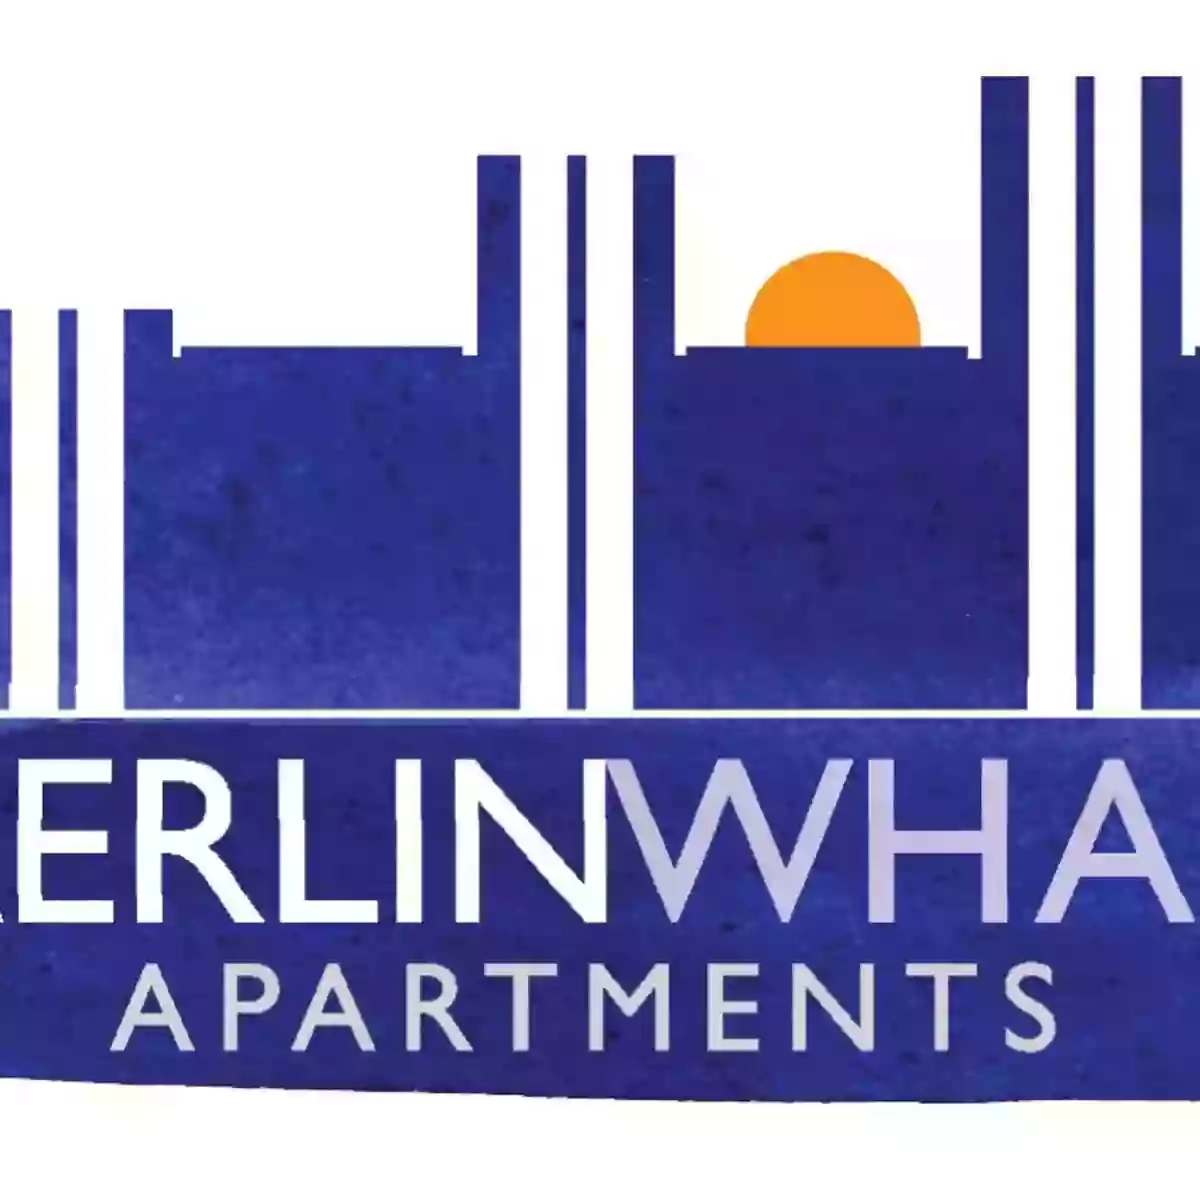 Merlin Wharf Apartments